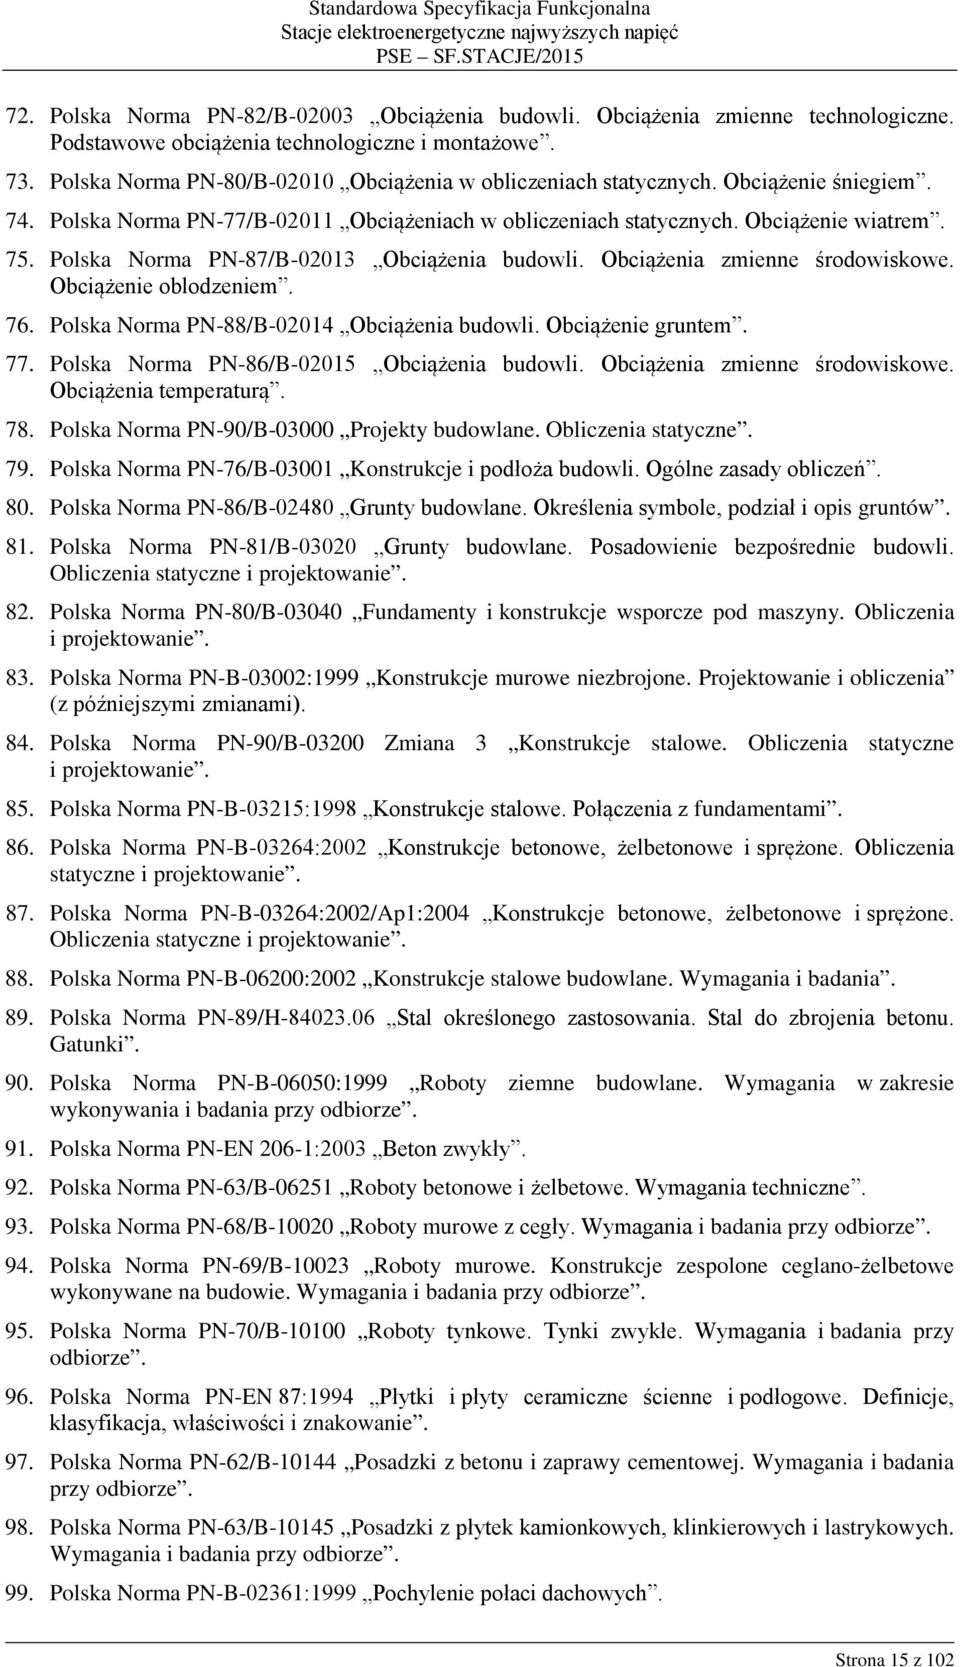 Polska Norma PN-87/B-02013 Obciążenia budowli. Obciążenia zmienne środowiskowe. Obciążenie oblodzeniem. 76. Polska Norma PN-88/B-02014 Obciążenia budowli. Obciążenie gruntem. 77.